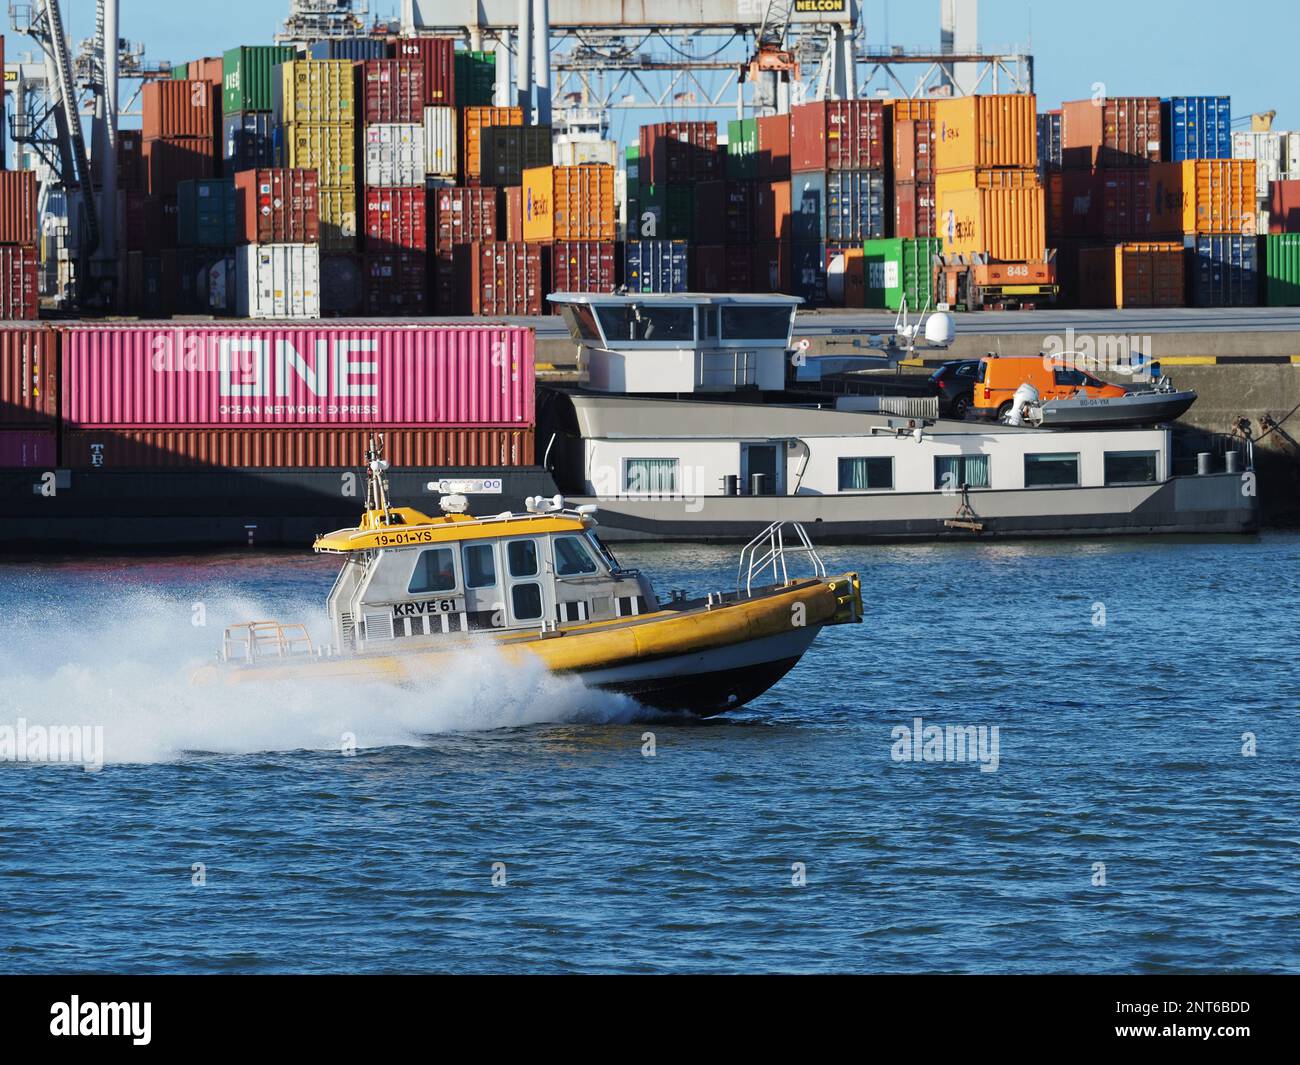 KRVE61 est un bateau pilote à grande vitesse, vu ici dans le port de Rotterdam, aux pays-Bas. Banque D'Images